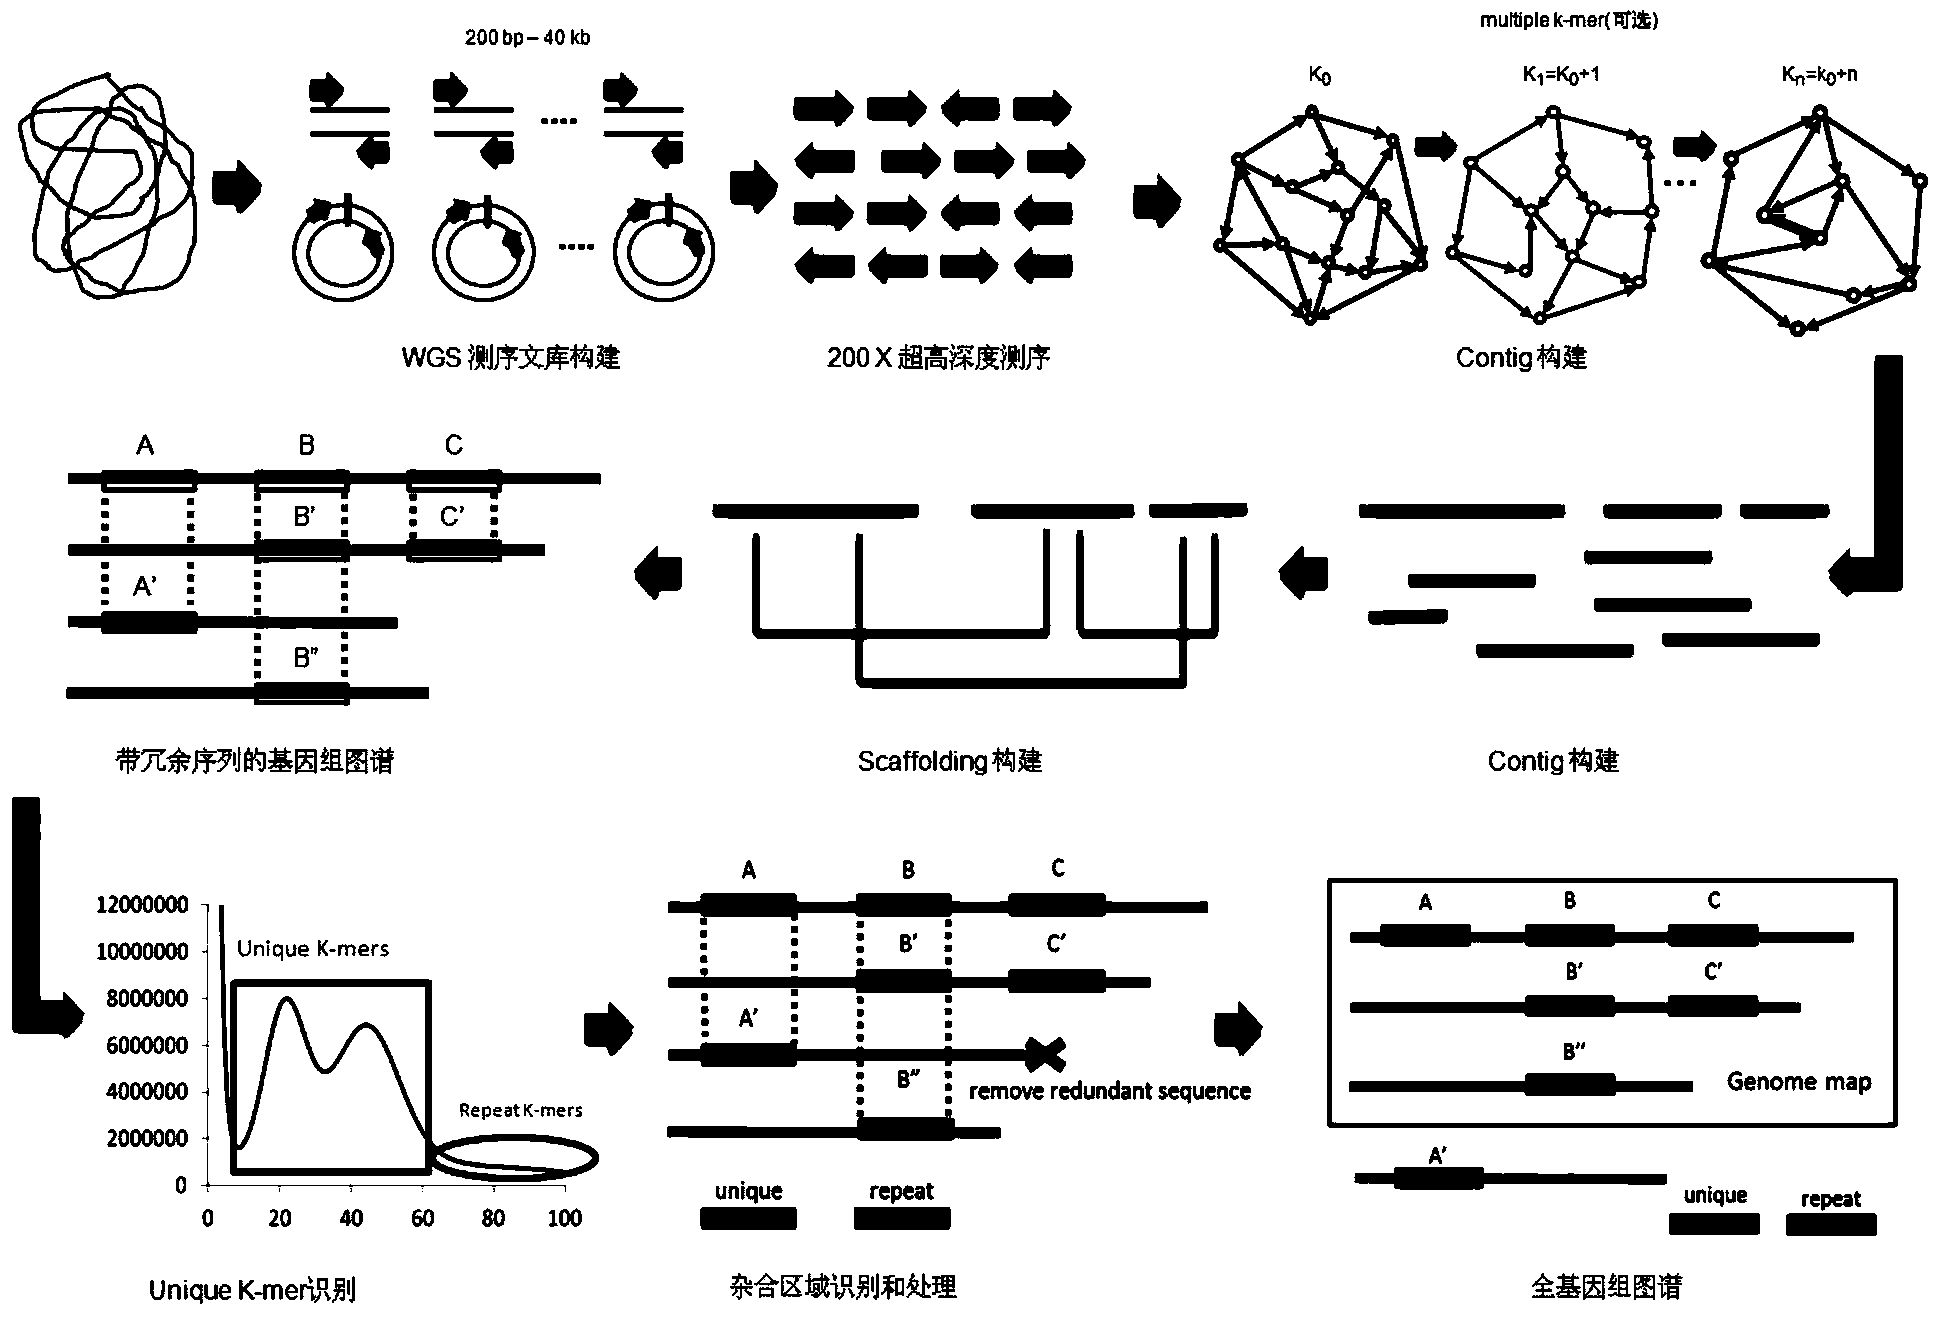 Heterozygous genome processing method